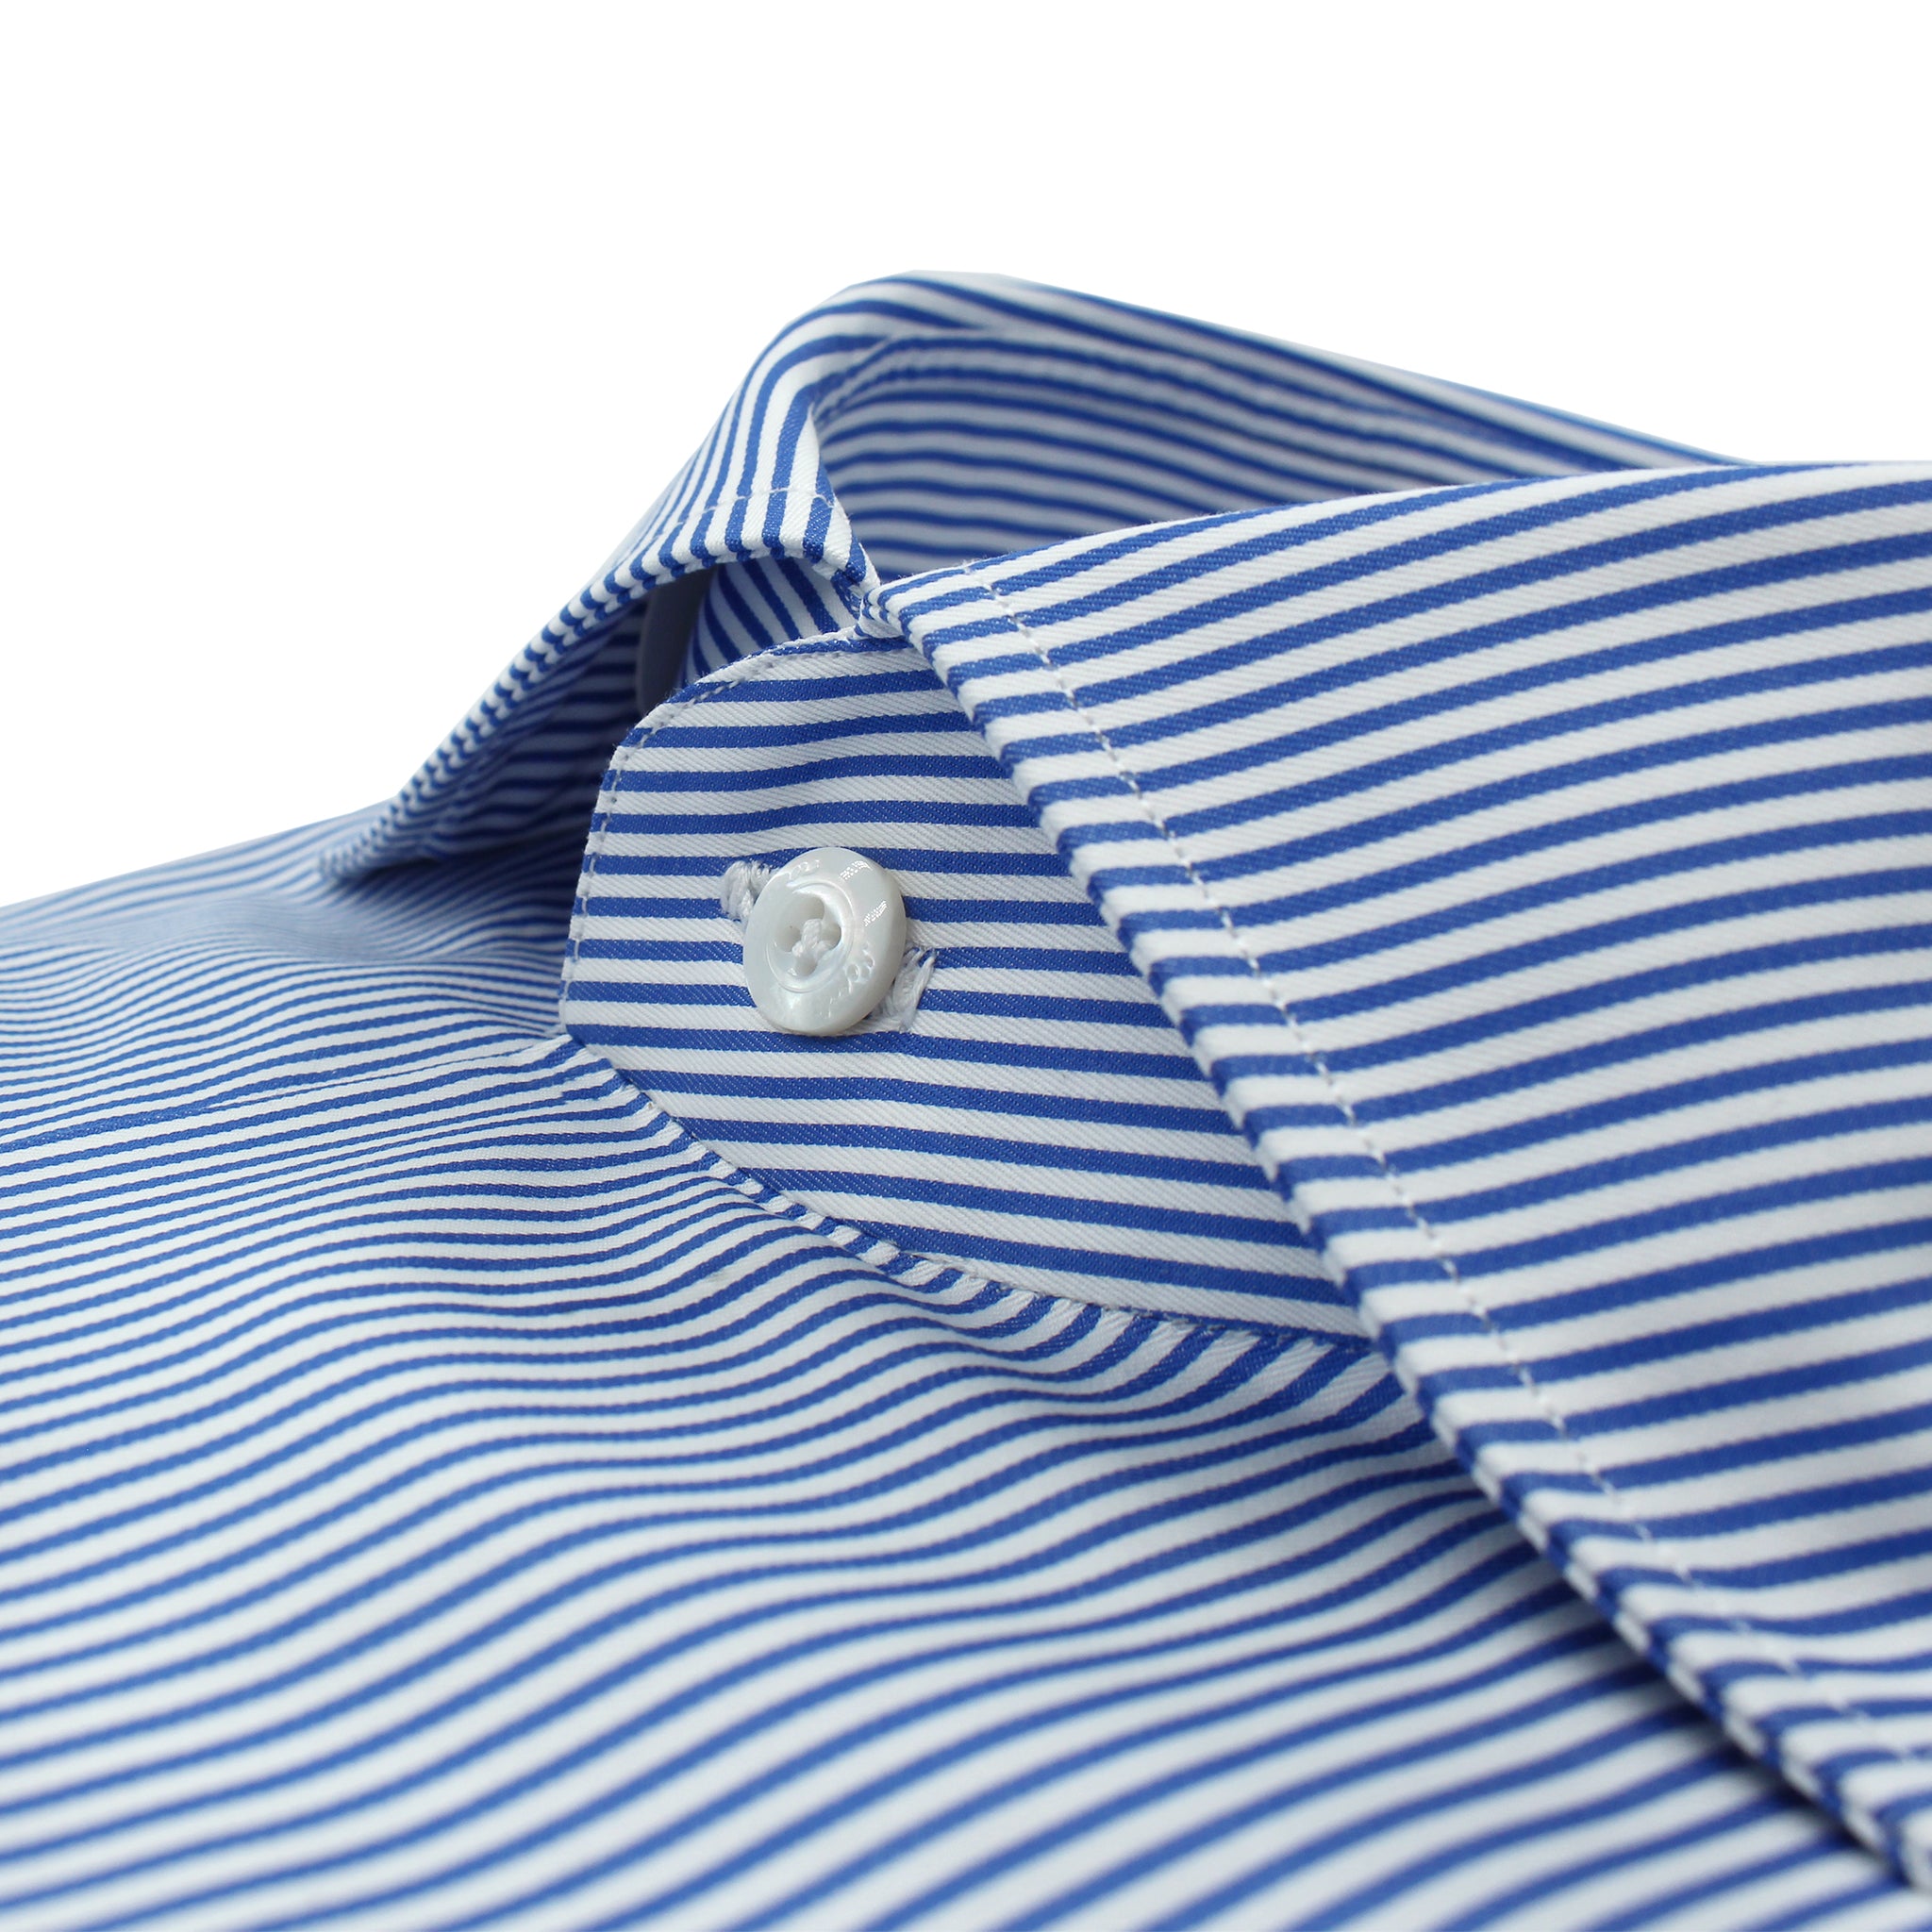 Naples classic striped shirt blue 170 a Due